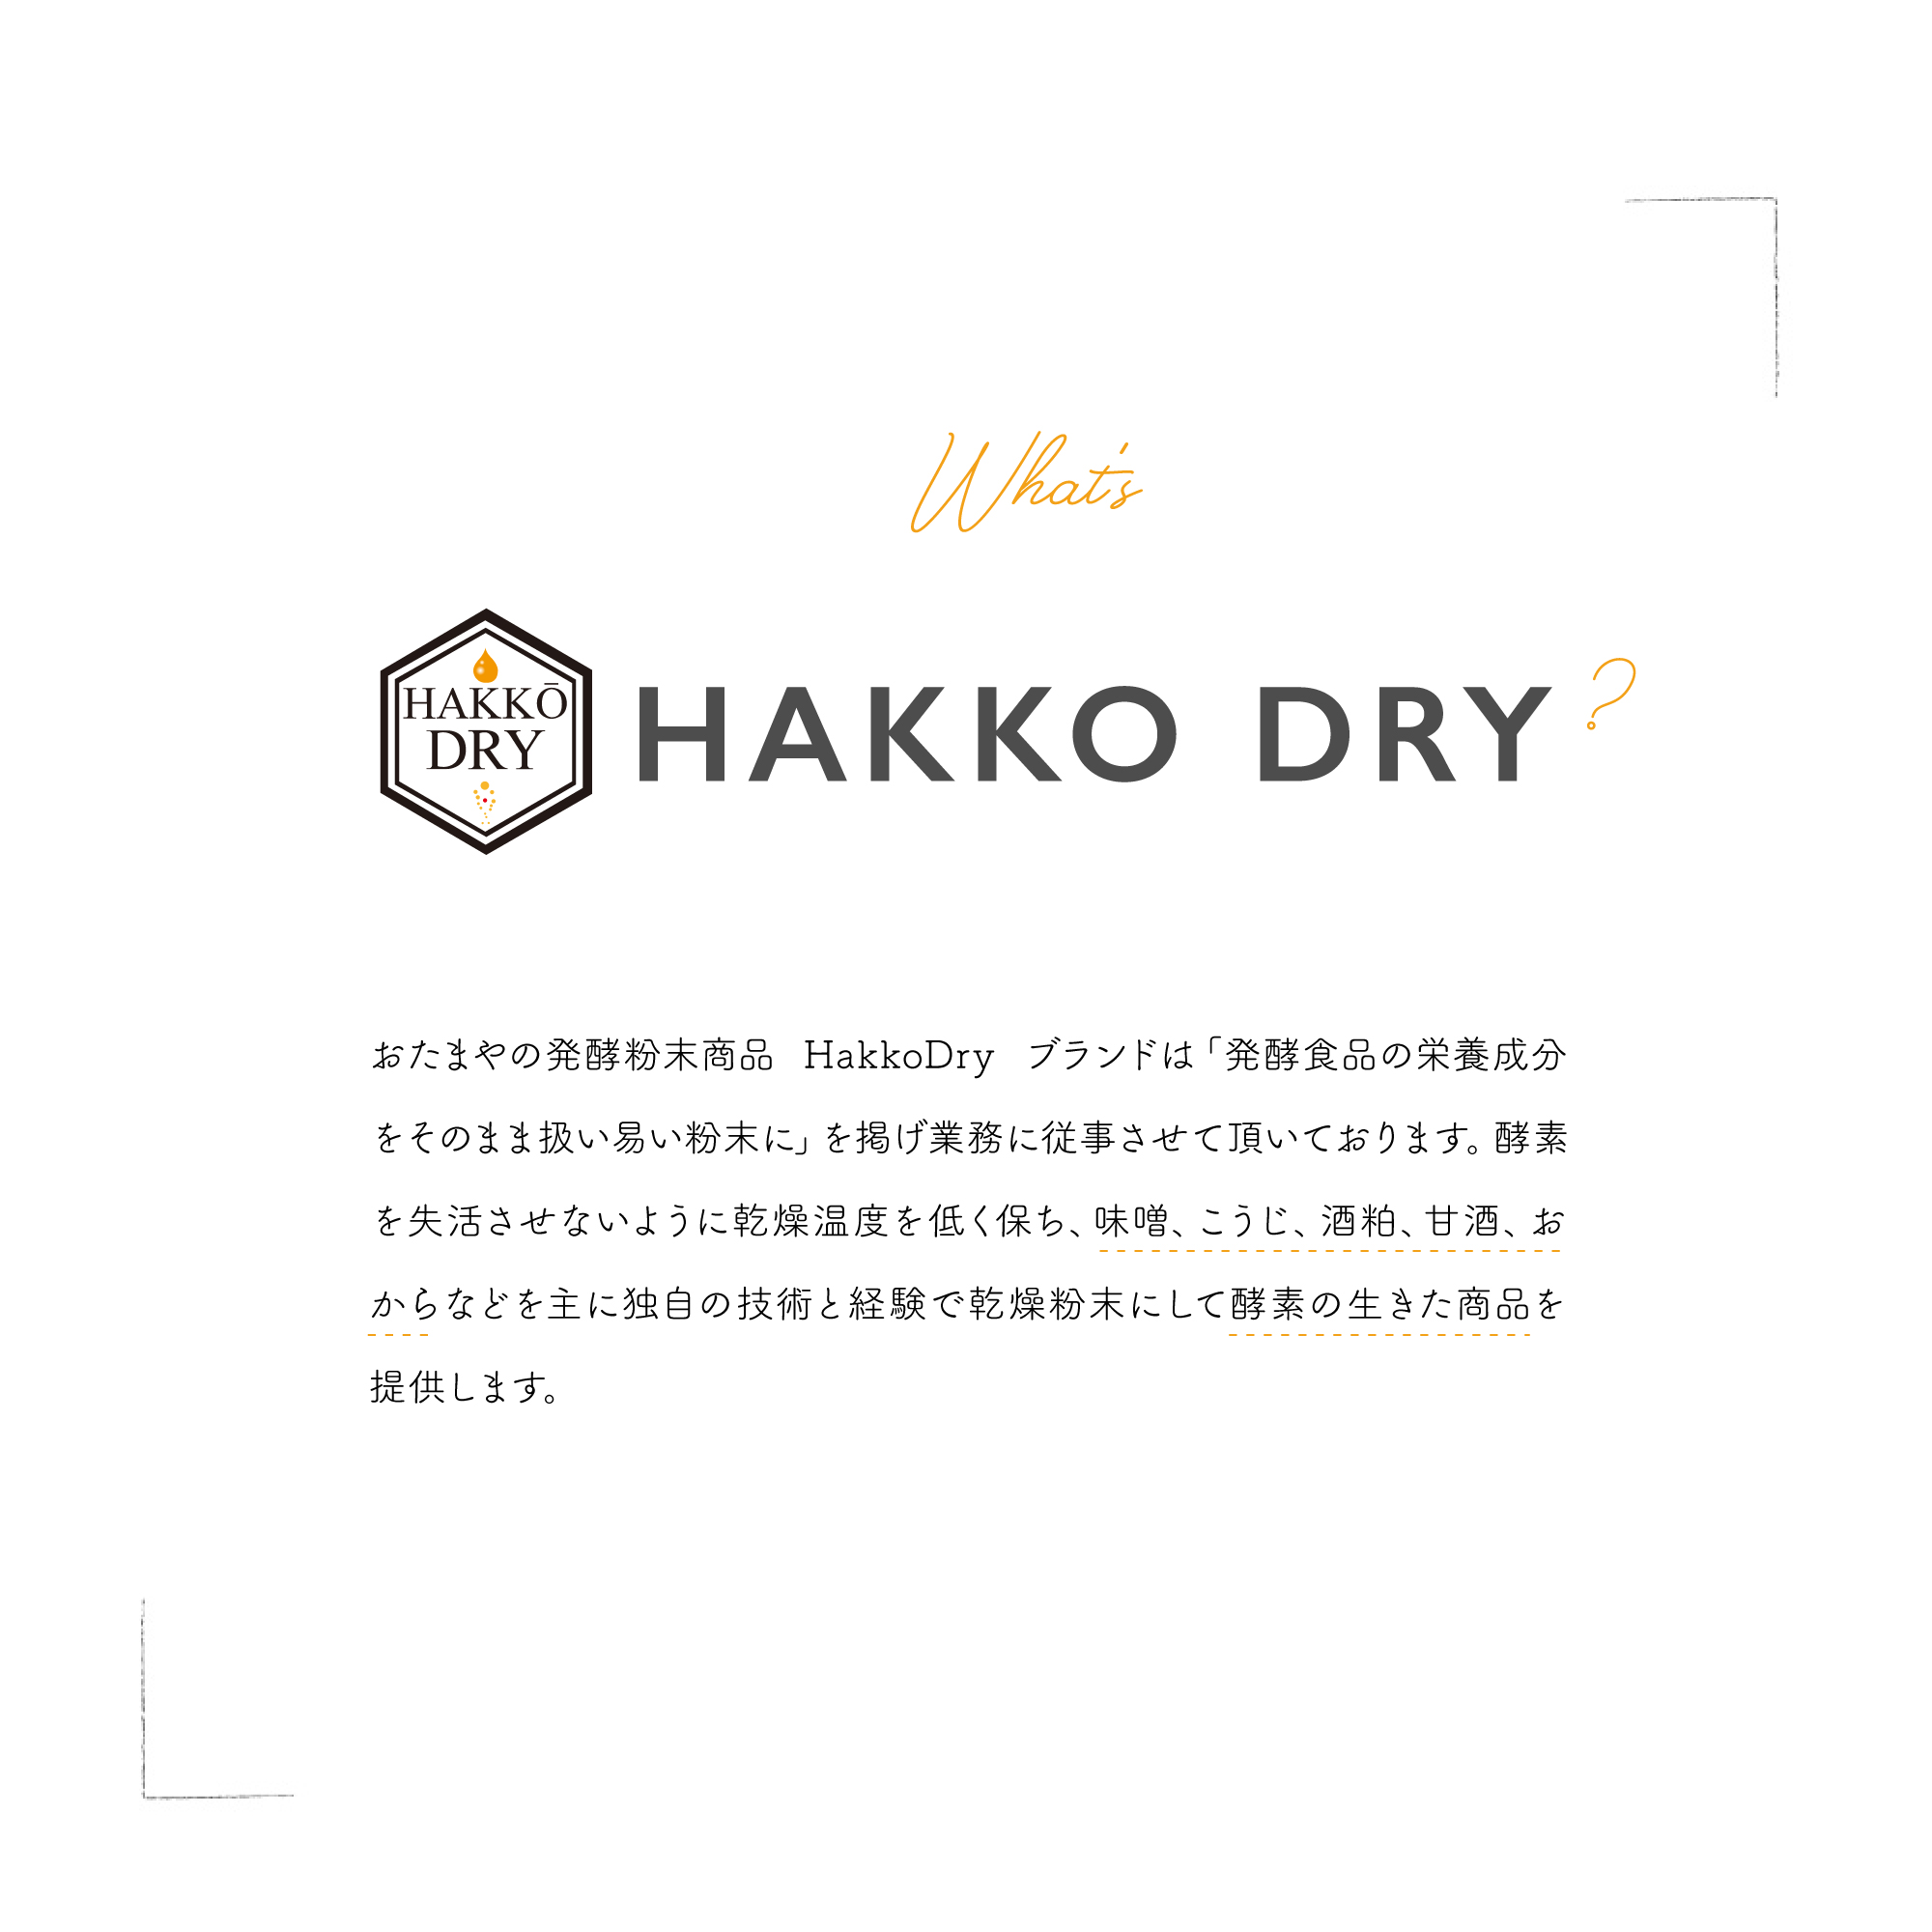 おたまやの発酵粉末商品 HakkoDry ブランドは「発酵食品の栄養成分をそのまま扱い易い粉末に」を掲げ業務に従事させて頂いております。酵素を失活させないように乾燥温度を低く保ち、味噌、こうじ、酒粕、甘酒、おからなどを主に独自の技術と経験で乾燥粉末にして酵素の生きた商品を提供します。